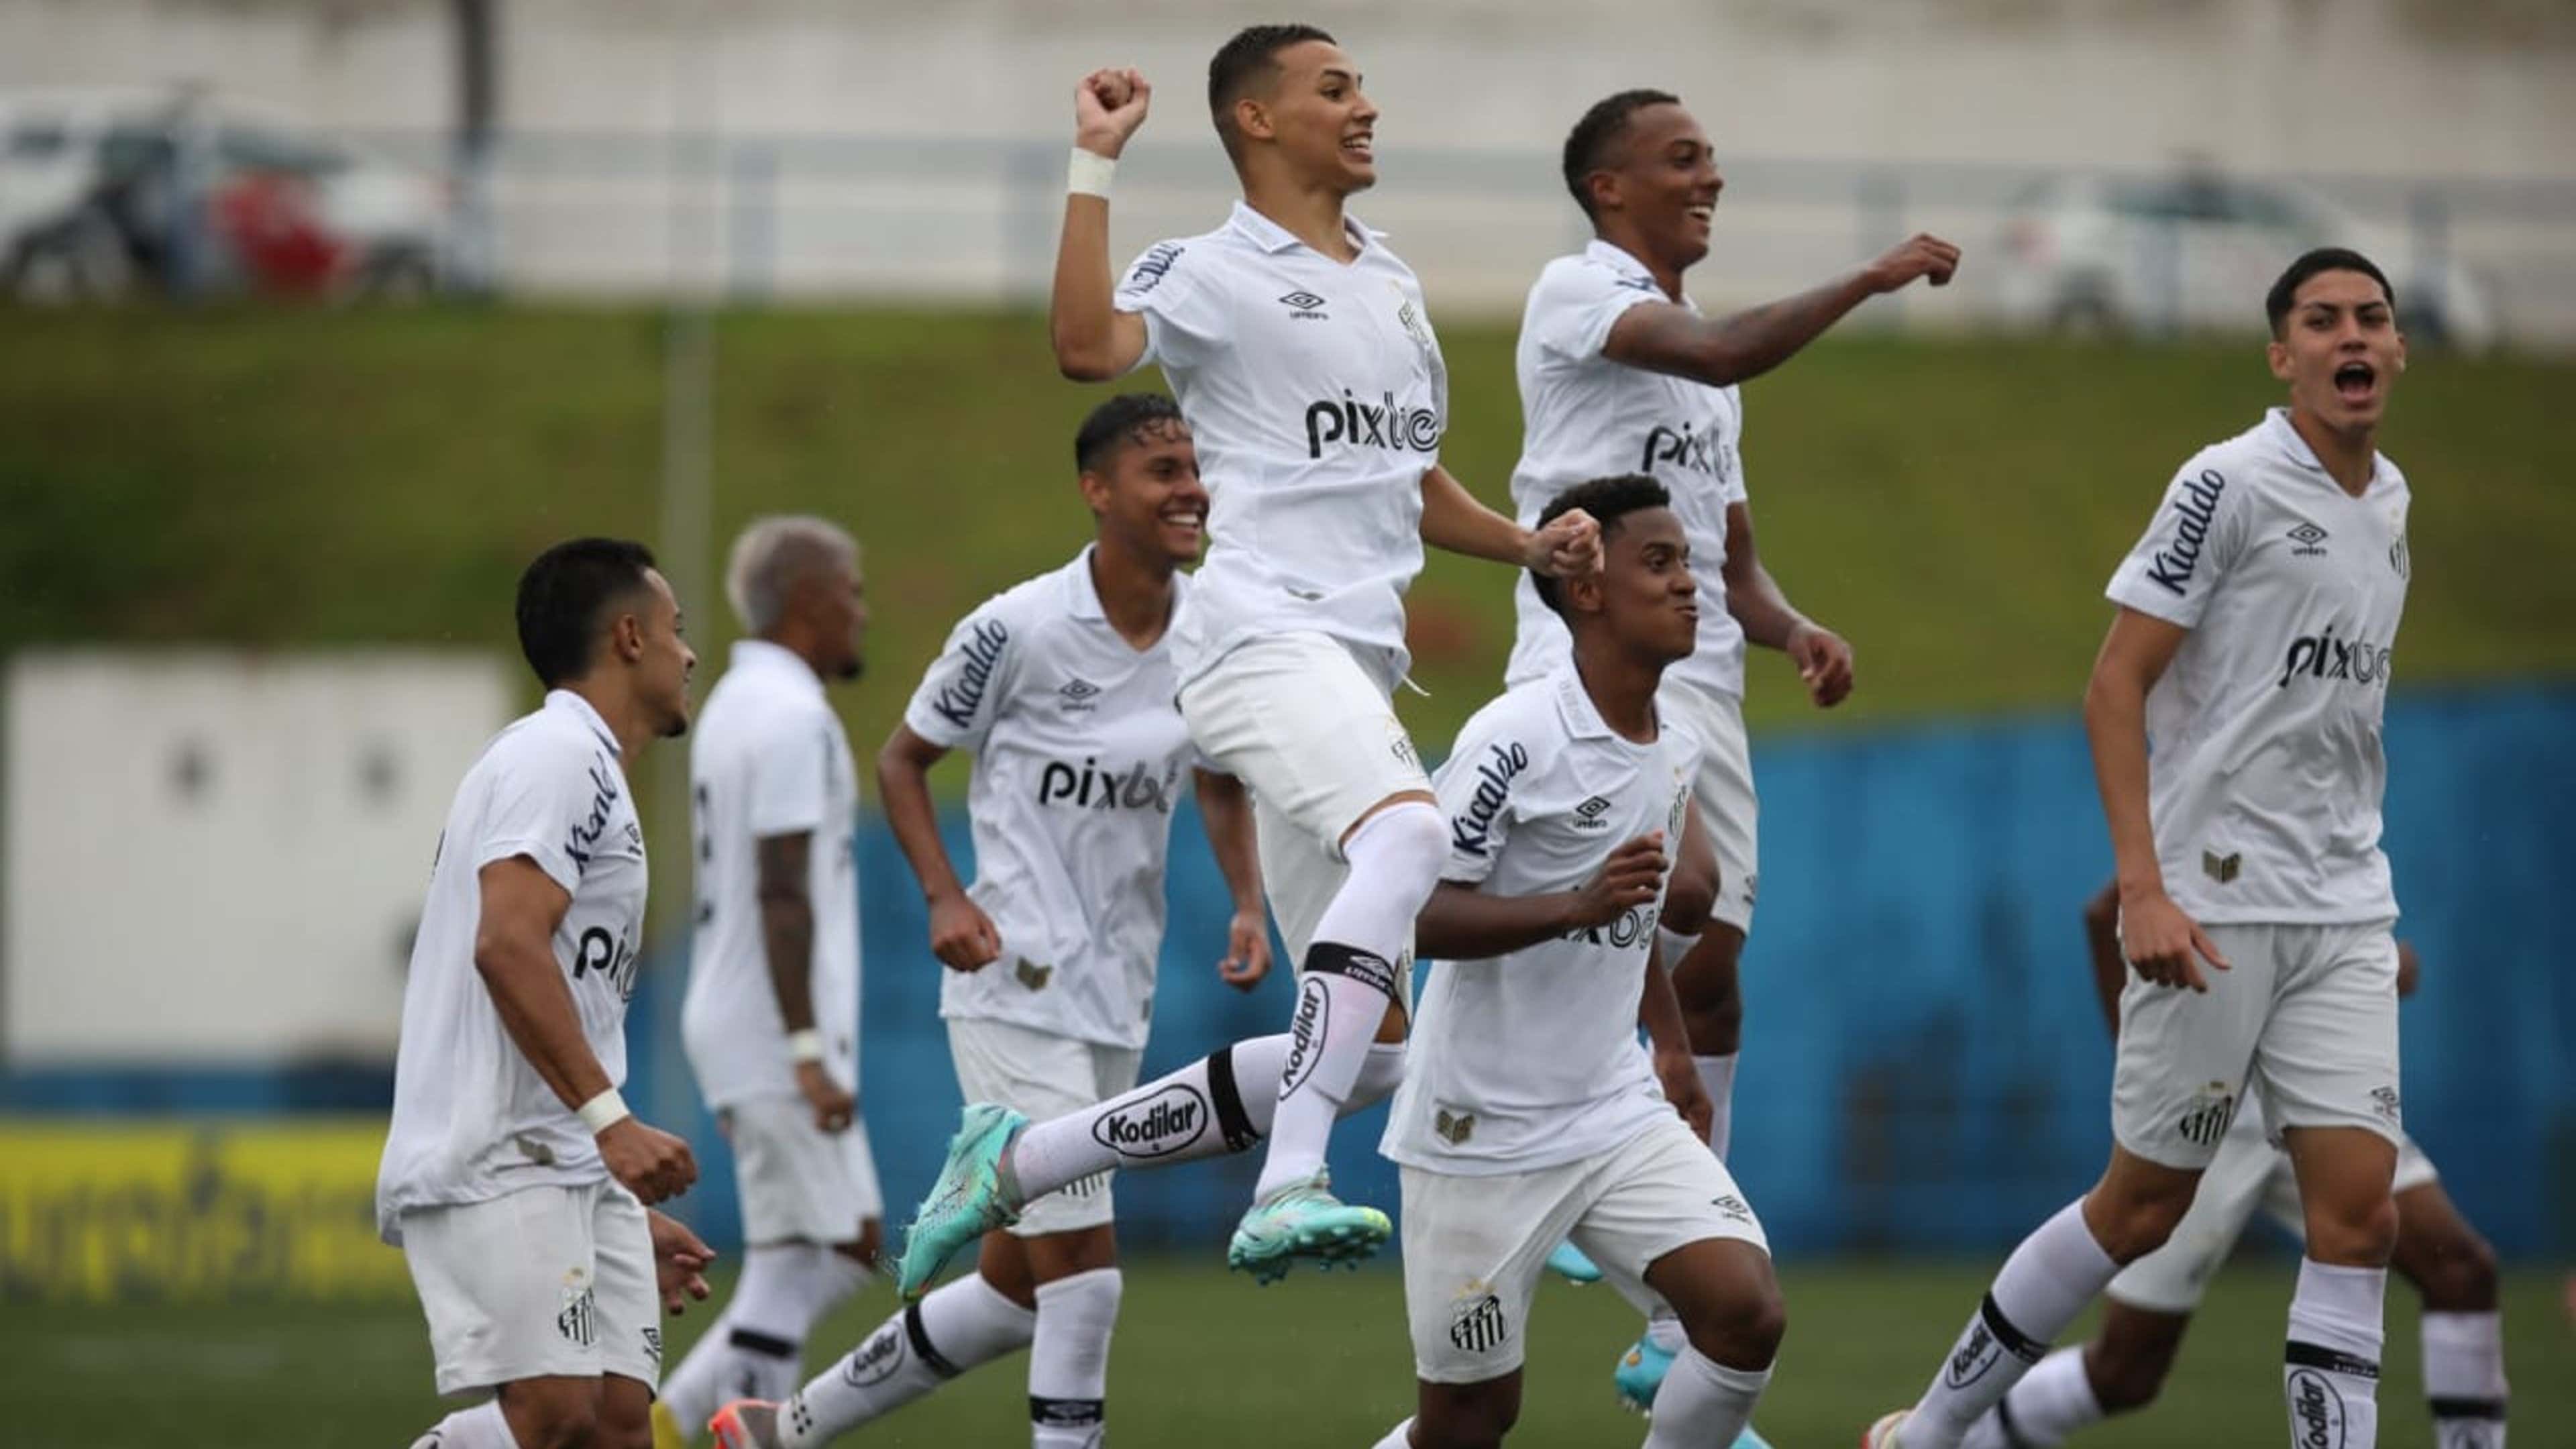 Grupo do Santos na Copinha 2023: times, jogos, datas e horários